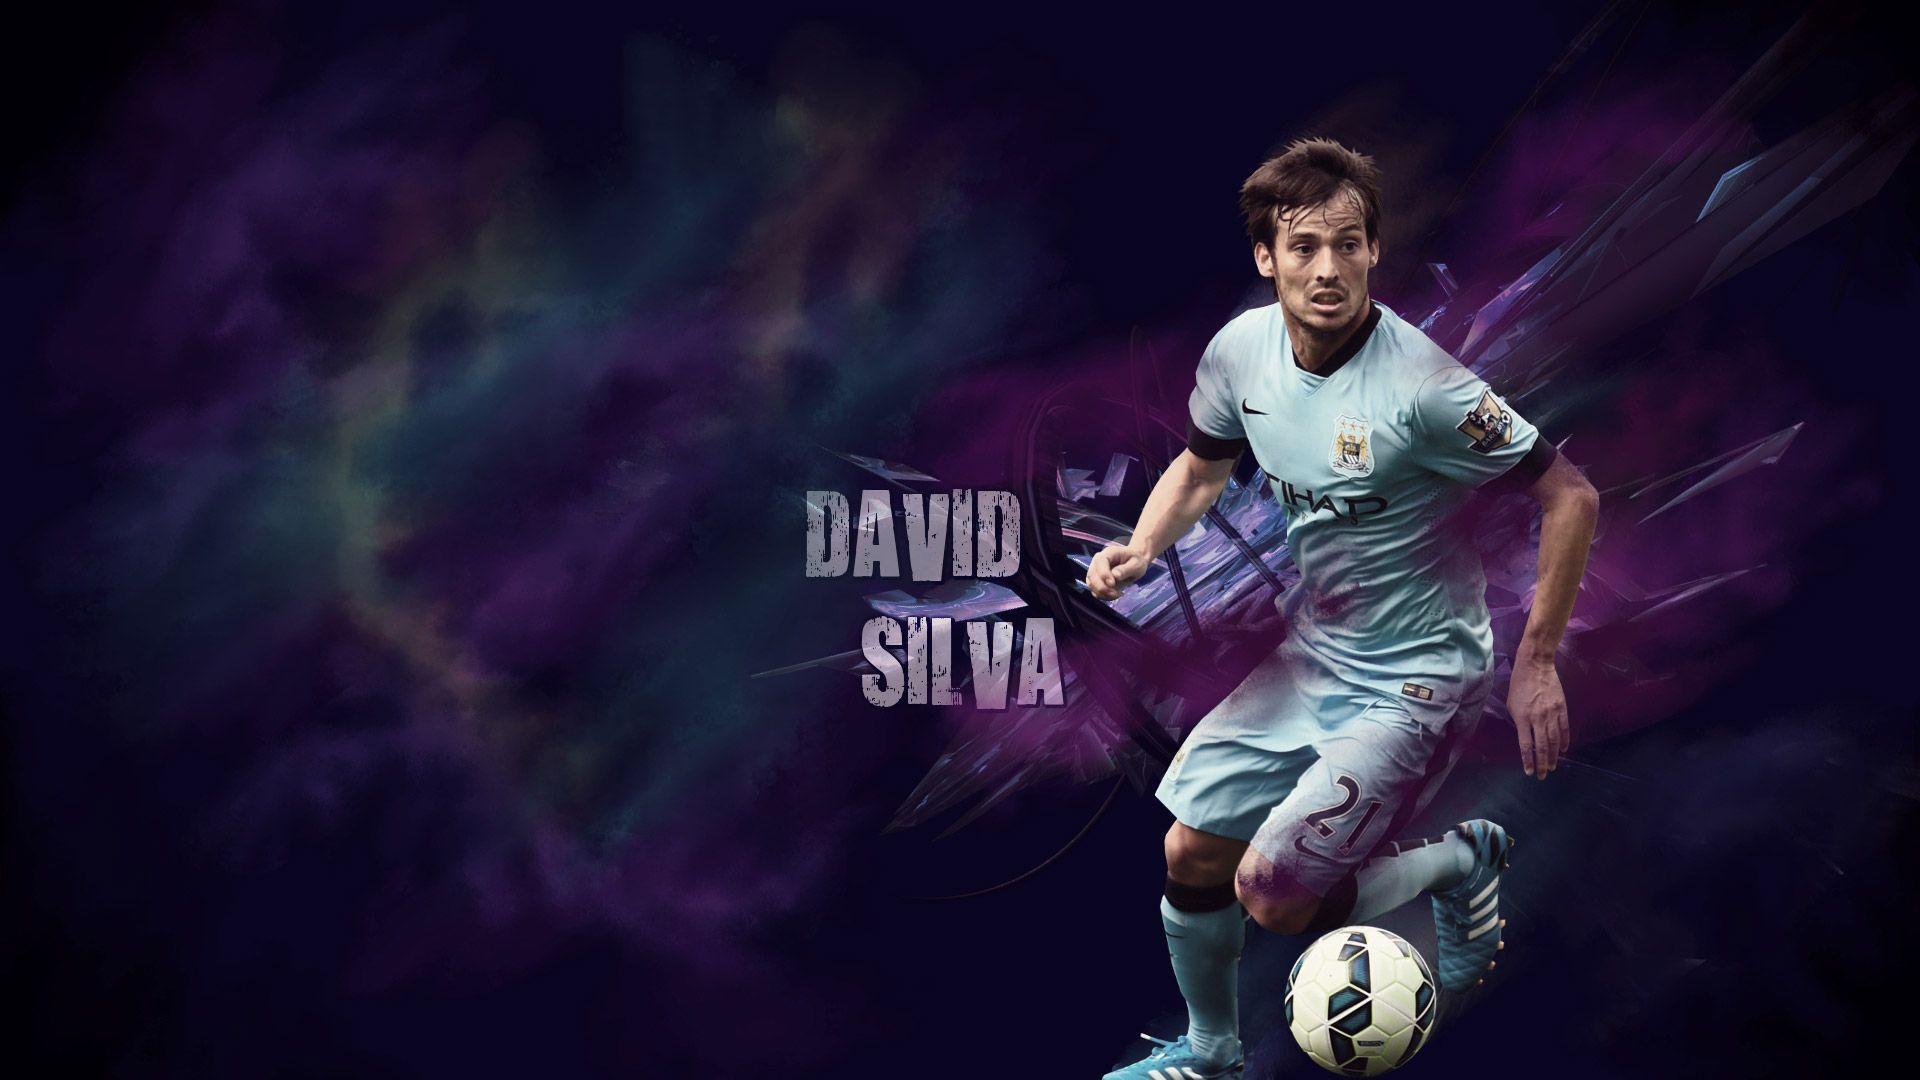 David Silva Wallpaper, HD David Silva Wallpaper. Download